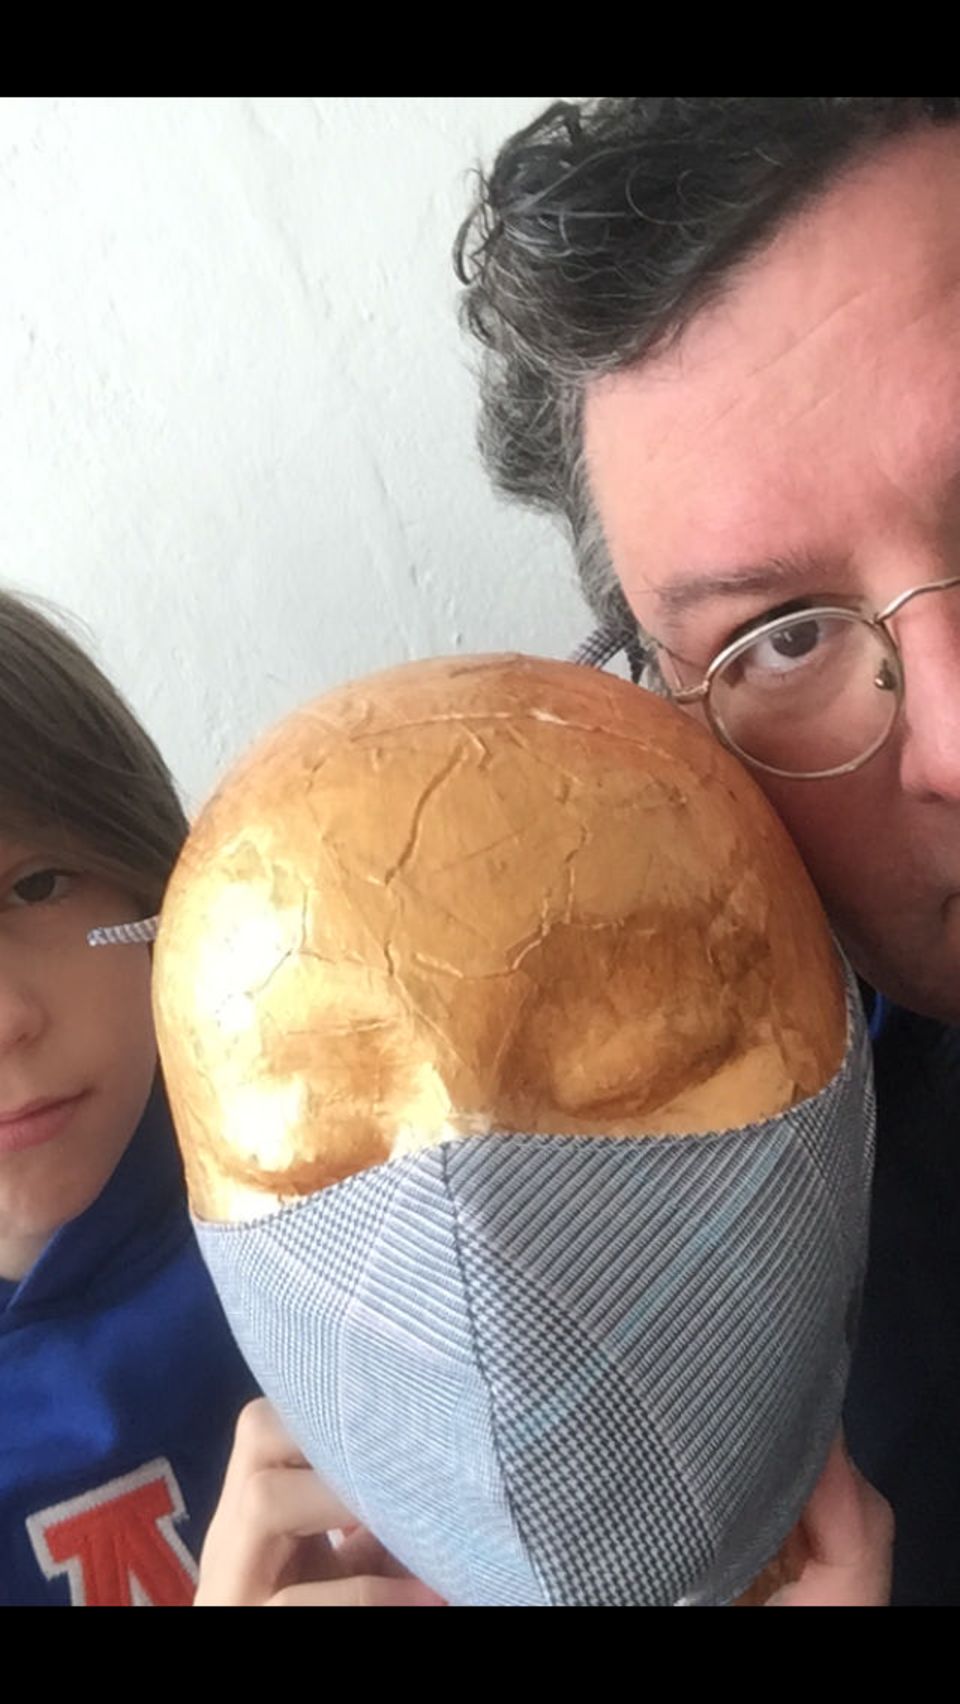 "Ein Schutz fürs Leben": Junge und Mann zeigen Puppe mit Maske